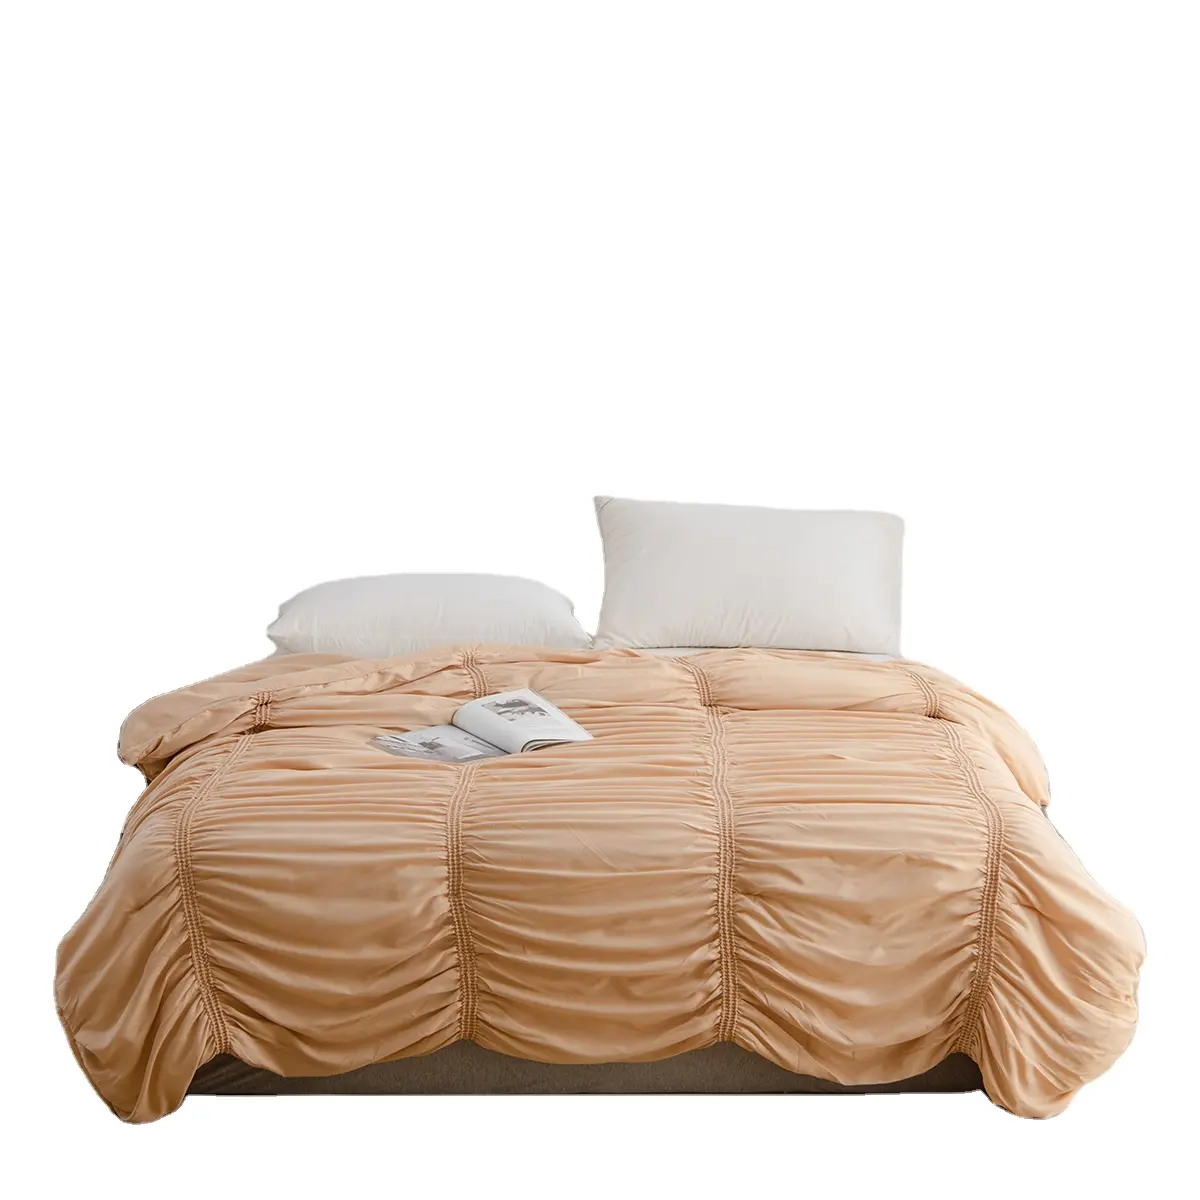 Европейский стиль акриловый 3d Печатный бамбуковый Белый Seersucker Легкий одеяло